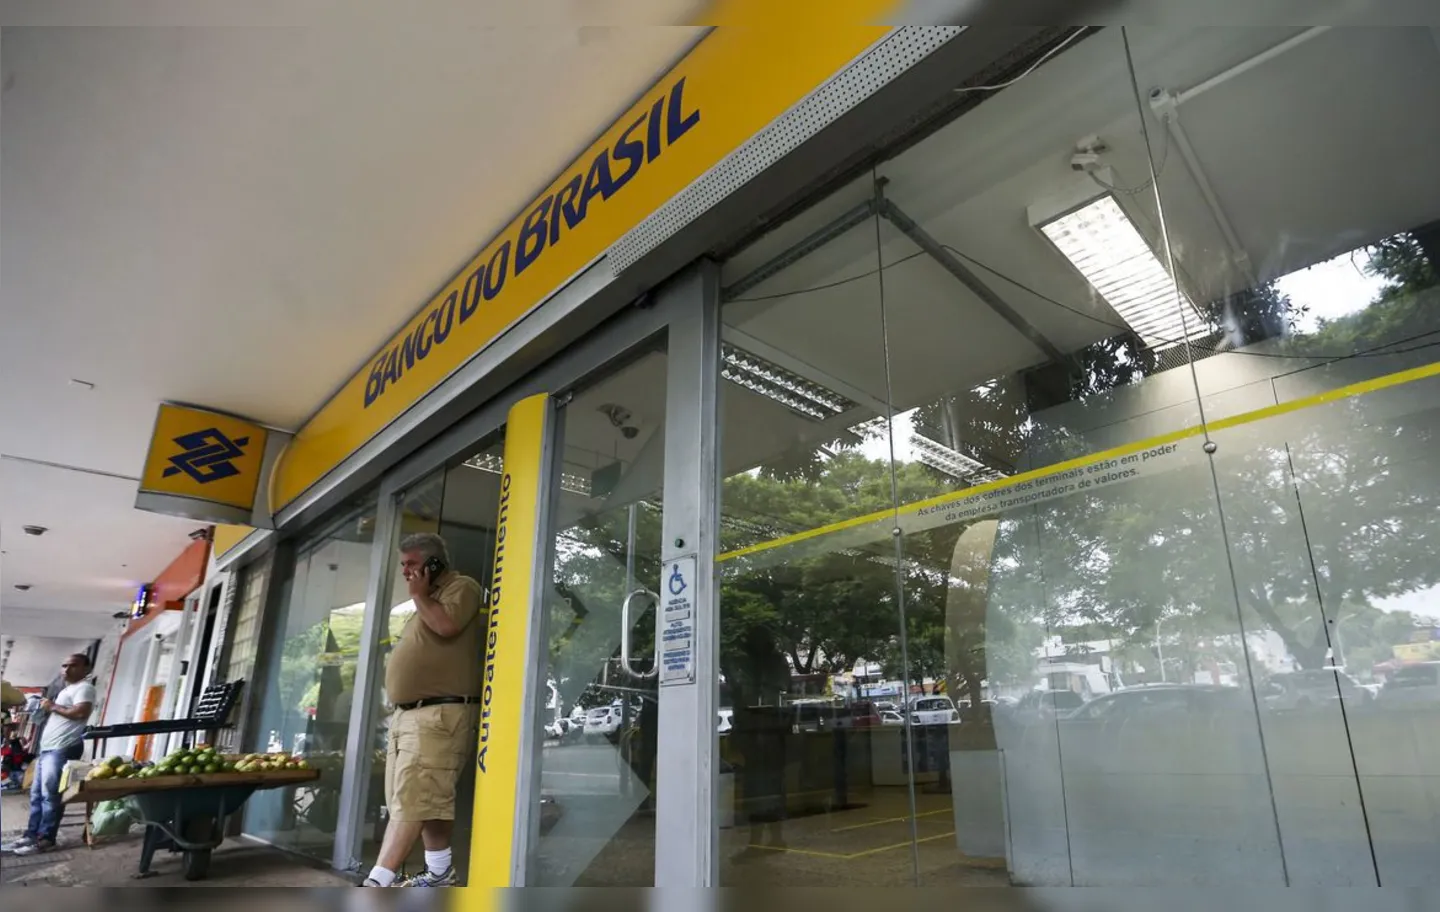 Bancos públicos ameaçaram deixar federação caso manifesto crítico ao governo fosse publicado | Foto: Marcelo Camargo | Agência Brasil